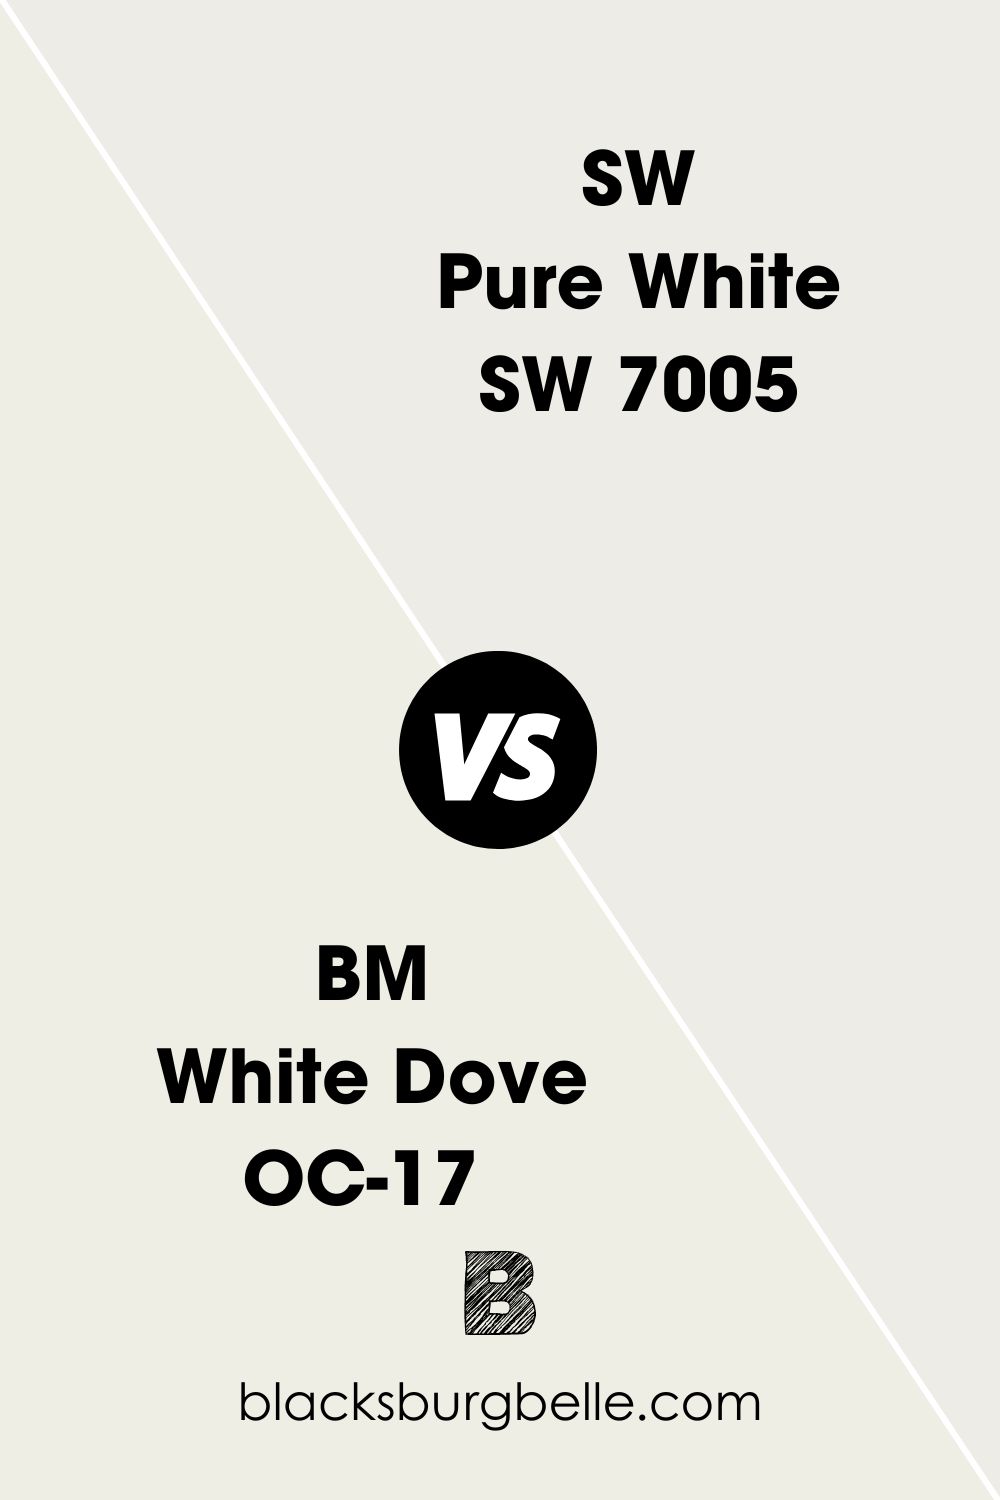 BM White Dove OC-17